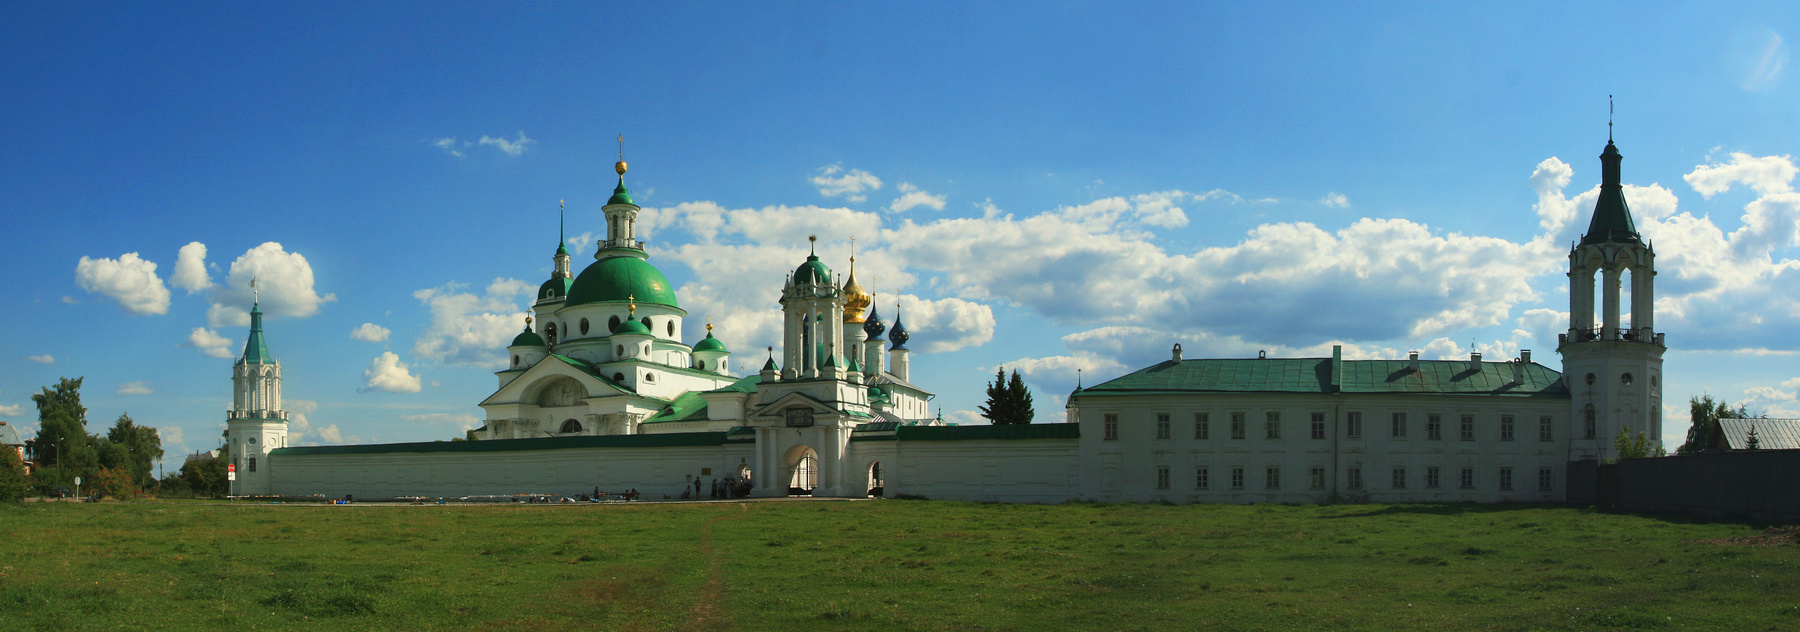 Спасо-Яковлевский монастырь на озере Неро Спасо-Яковлевский монастырь